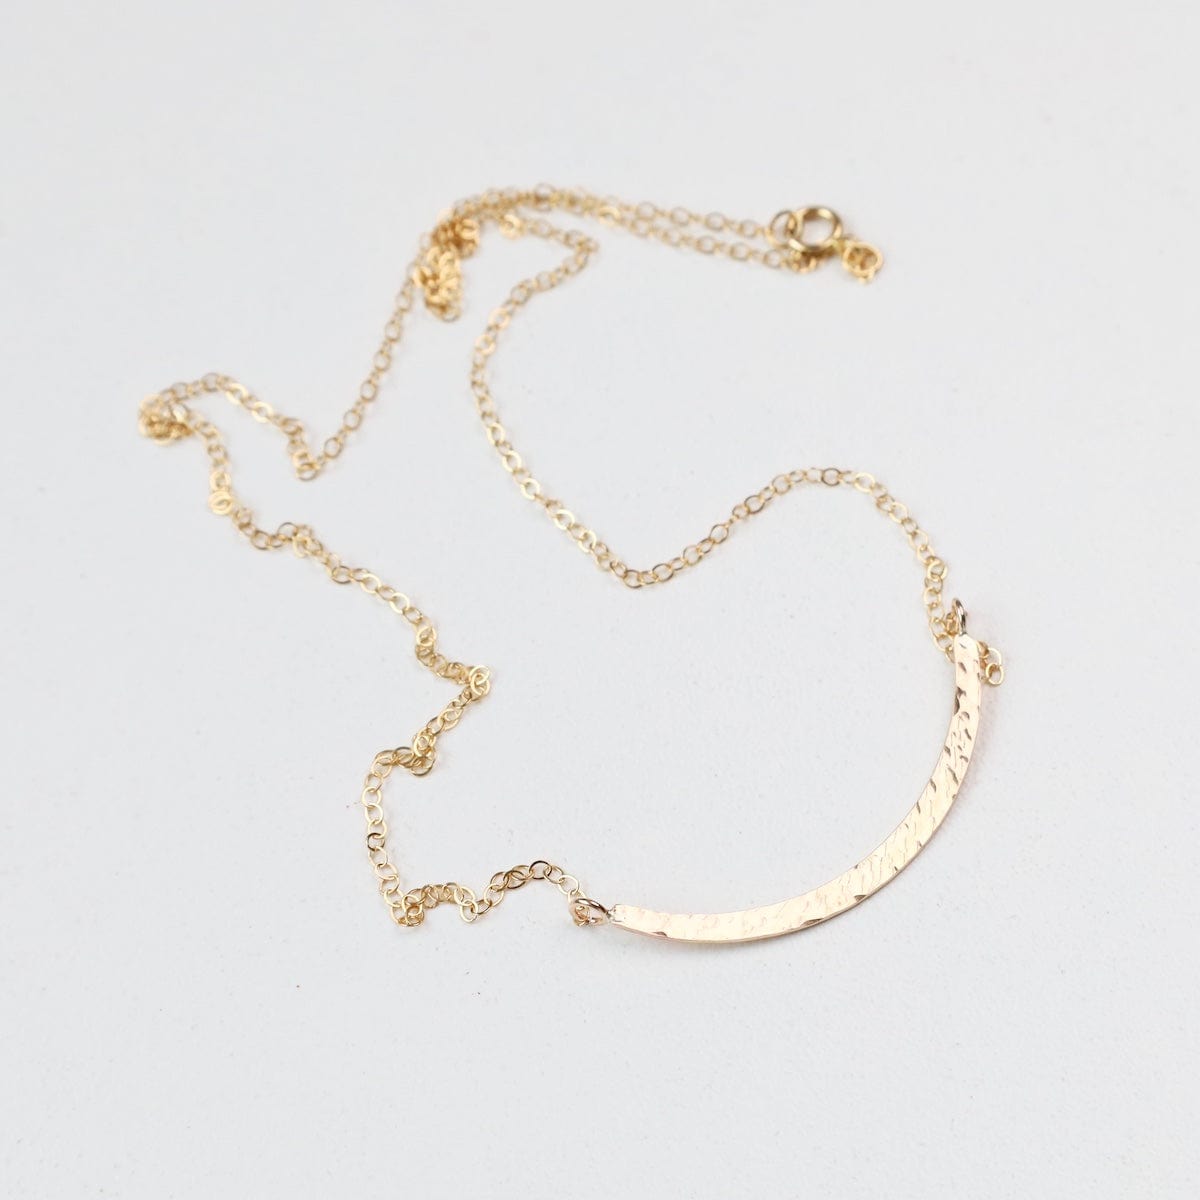 NKL-GF Gold Filled Hammered Curved Bar Necklace